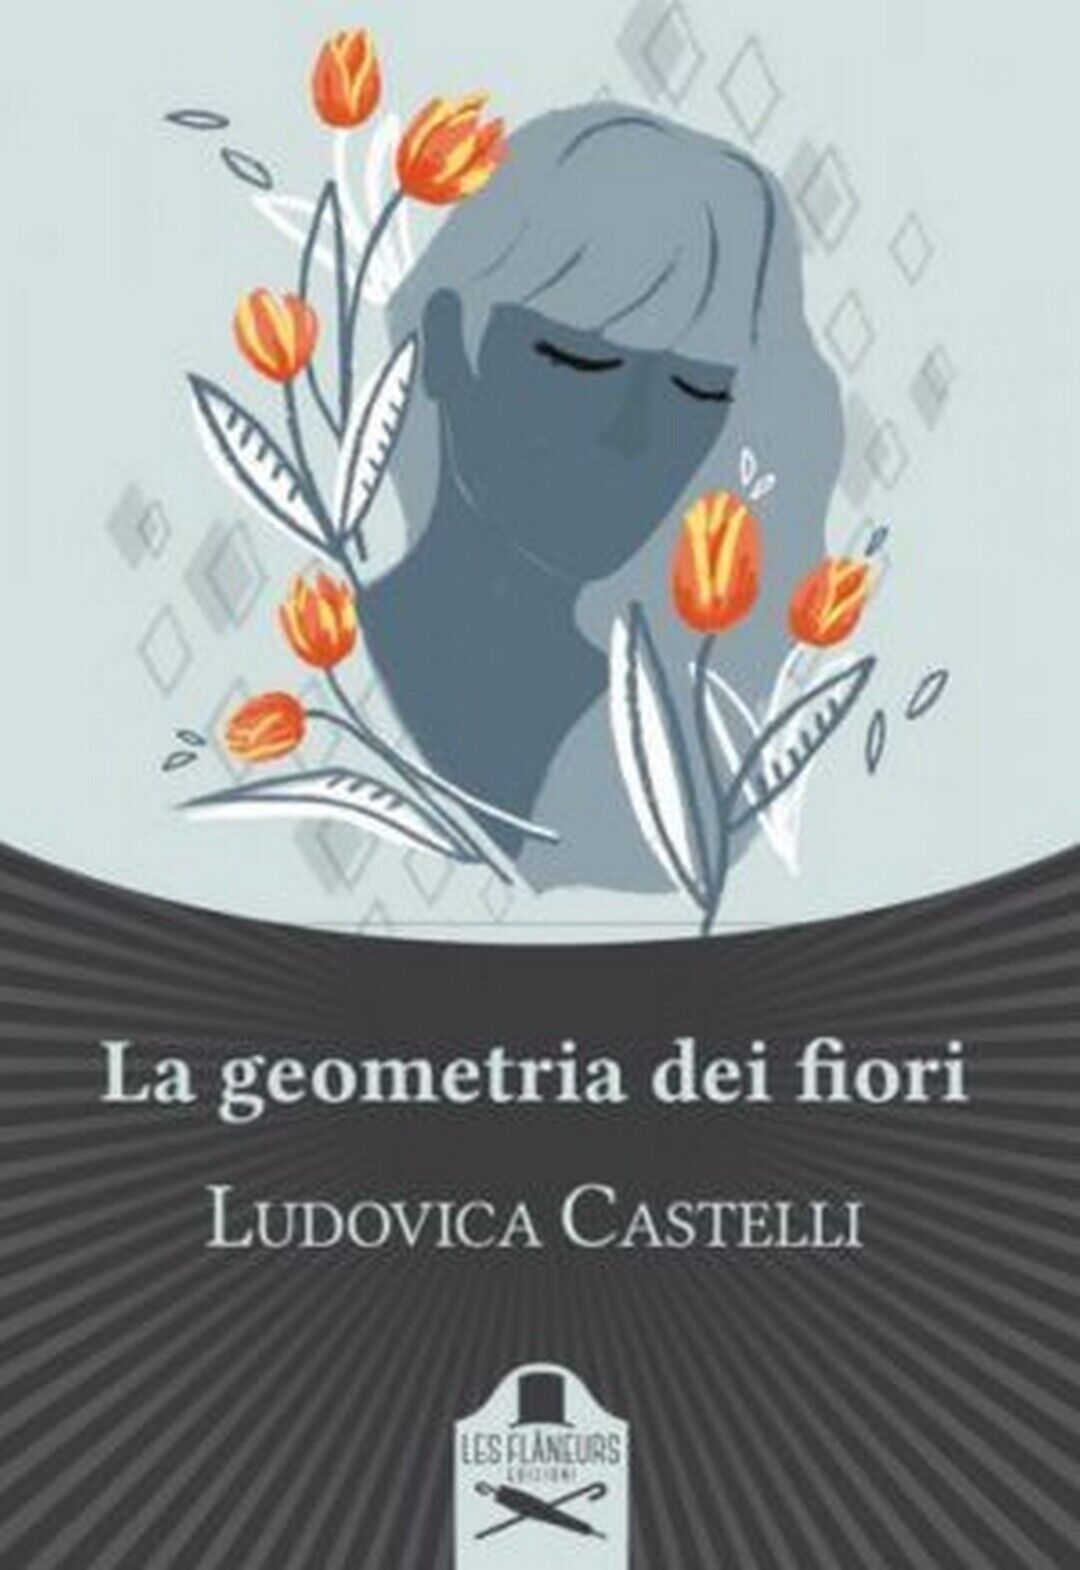 La geometria dei fiori  di Ludovica Castelli ,  Flaneurs